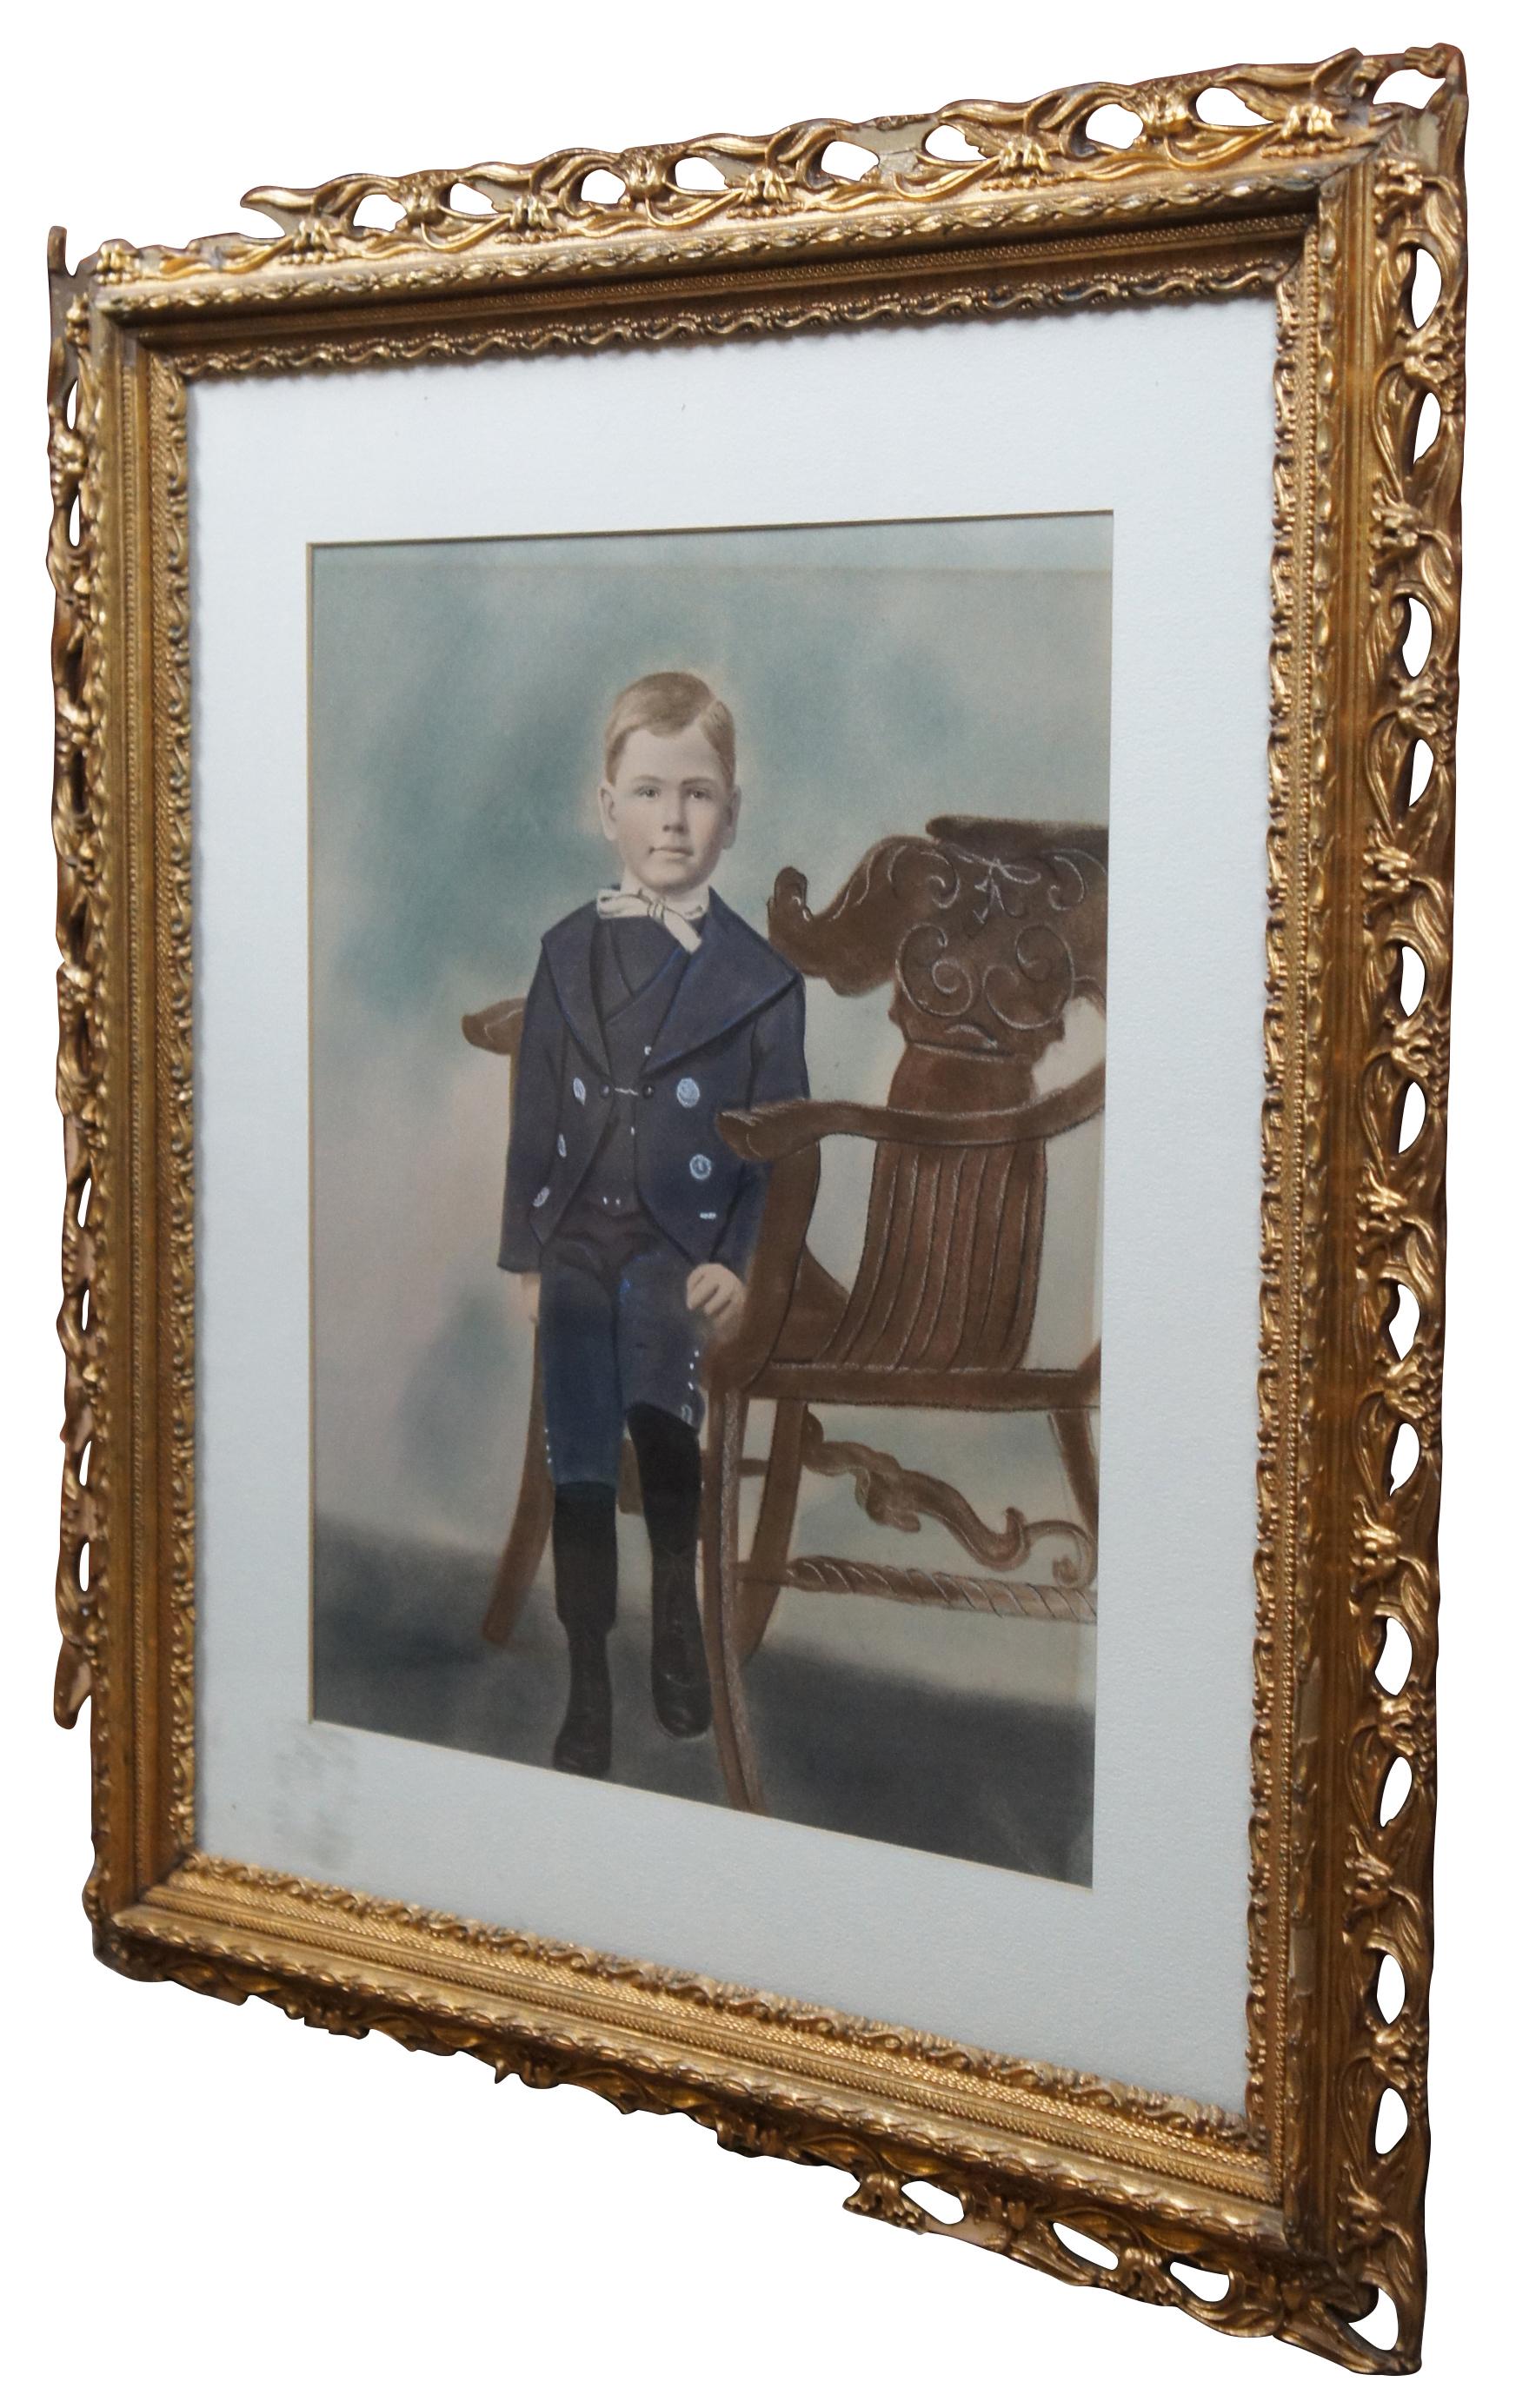 Portrait ancien au pastel d'un jeune garçon habillé au début du XXe siècle, assis sur une chaise victorienne Northwind. Un autocollant précédemment apposé sur la vitre avant identifiait le garçon comme étant Marcel Goffena, peut-être le même Marcel